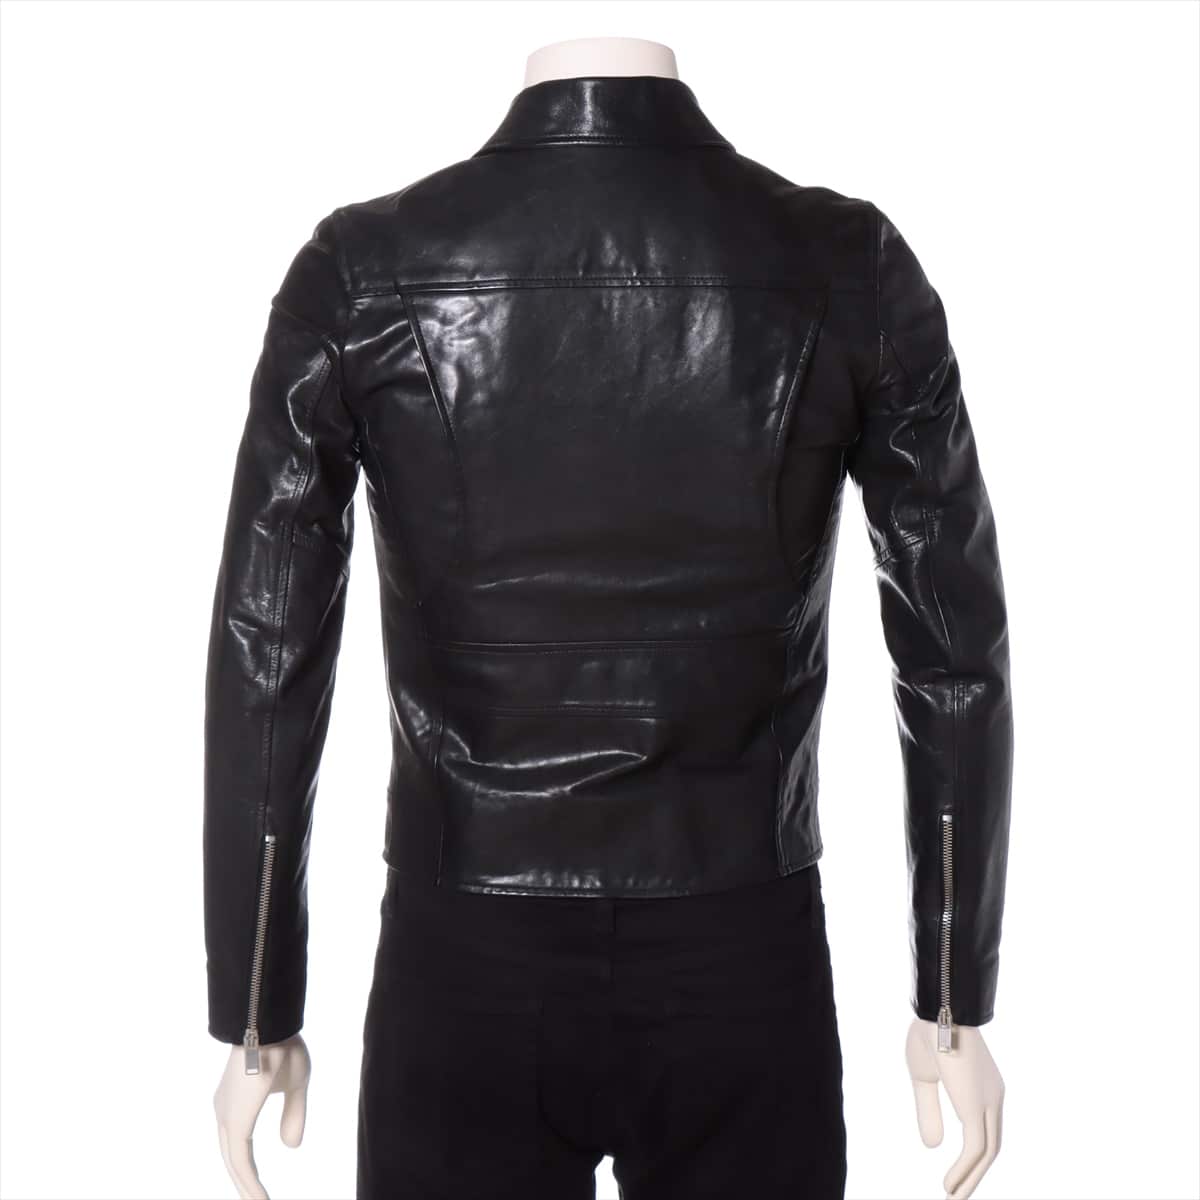 Saint Laurent Paris 14AW Leather Leather jacket 44 Men's Black  361845 Y5GF1